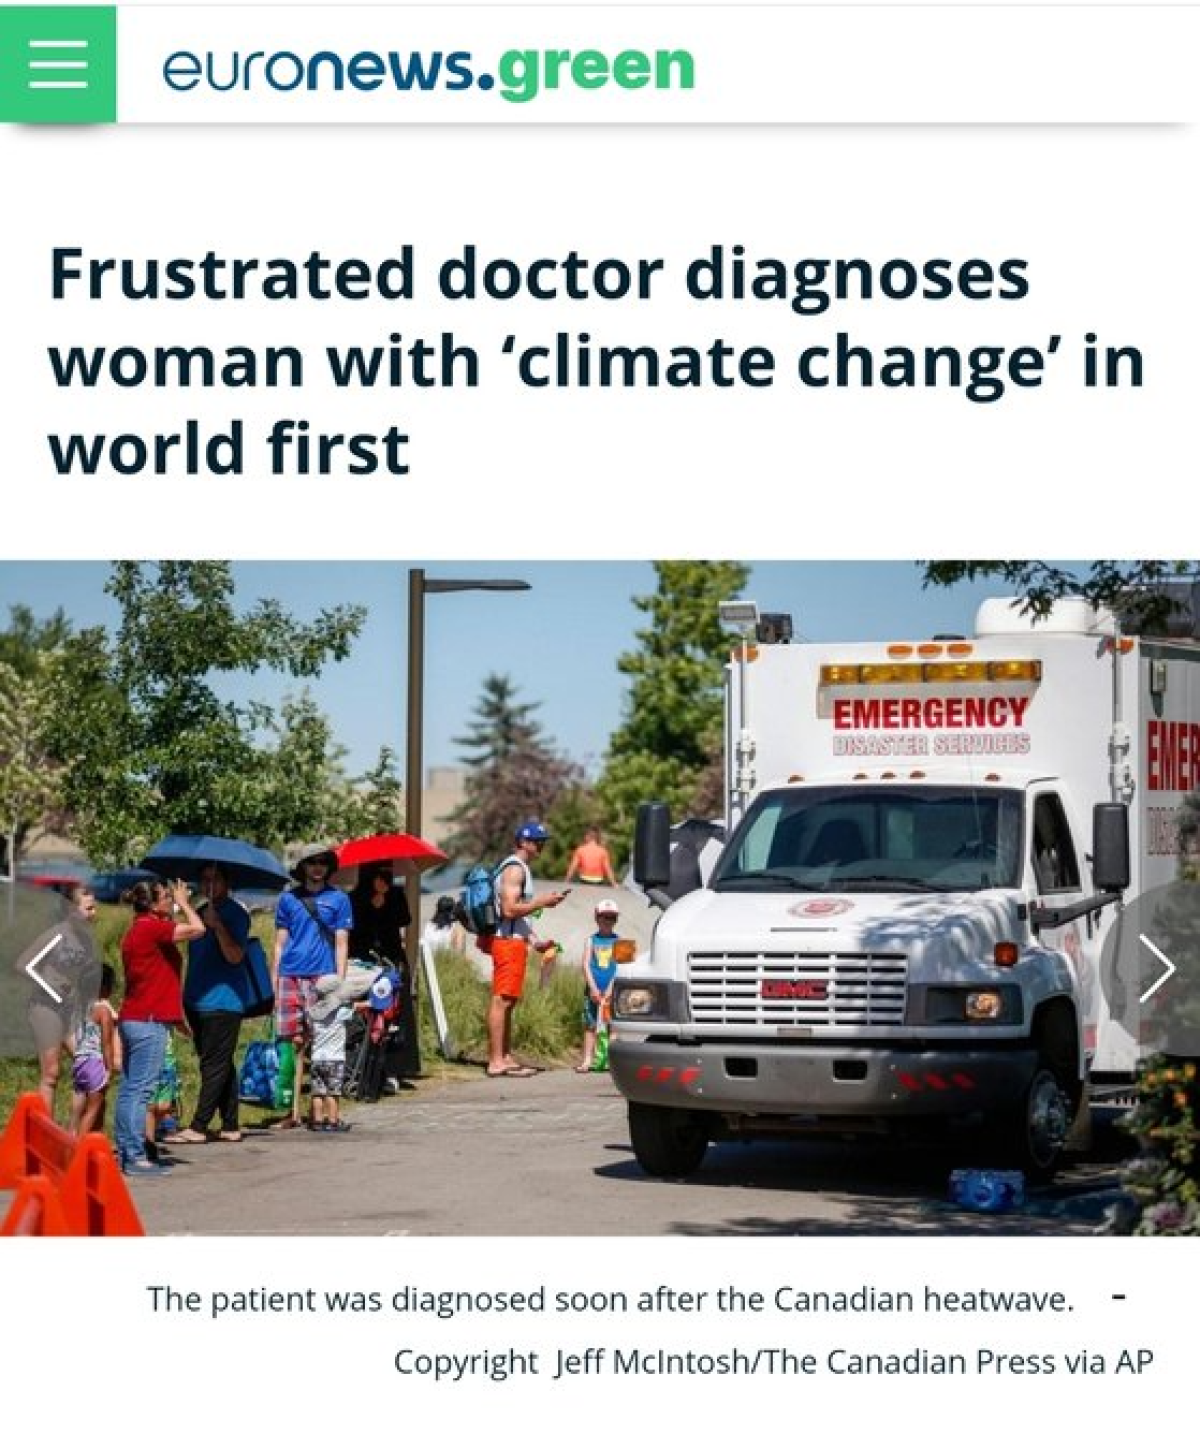 캐나다의 70대 환자가 세계 최초로 '기후변화로 인한 건강악화'라는 진단을 받았다. 유로뉴스 홈페이지 캡처.